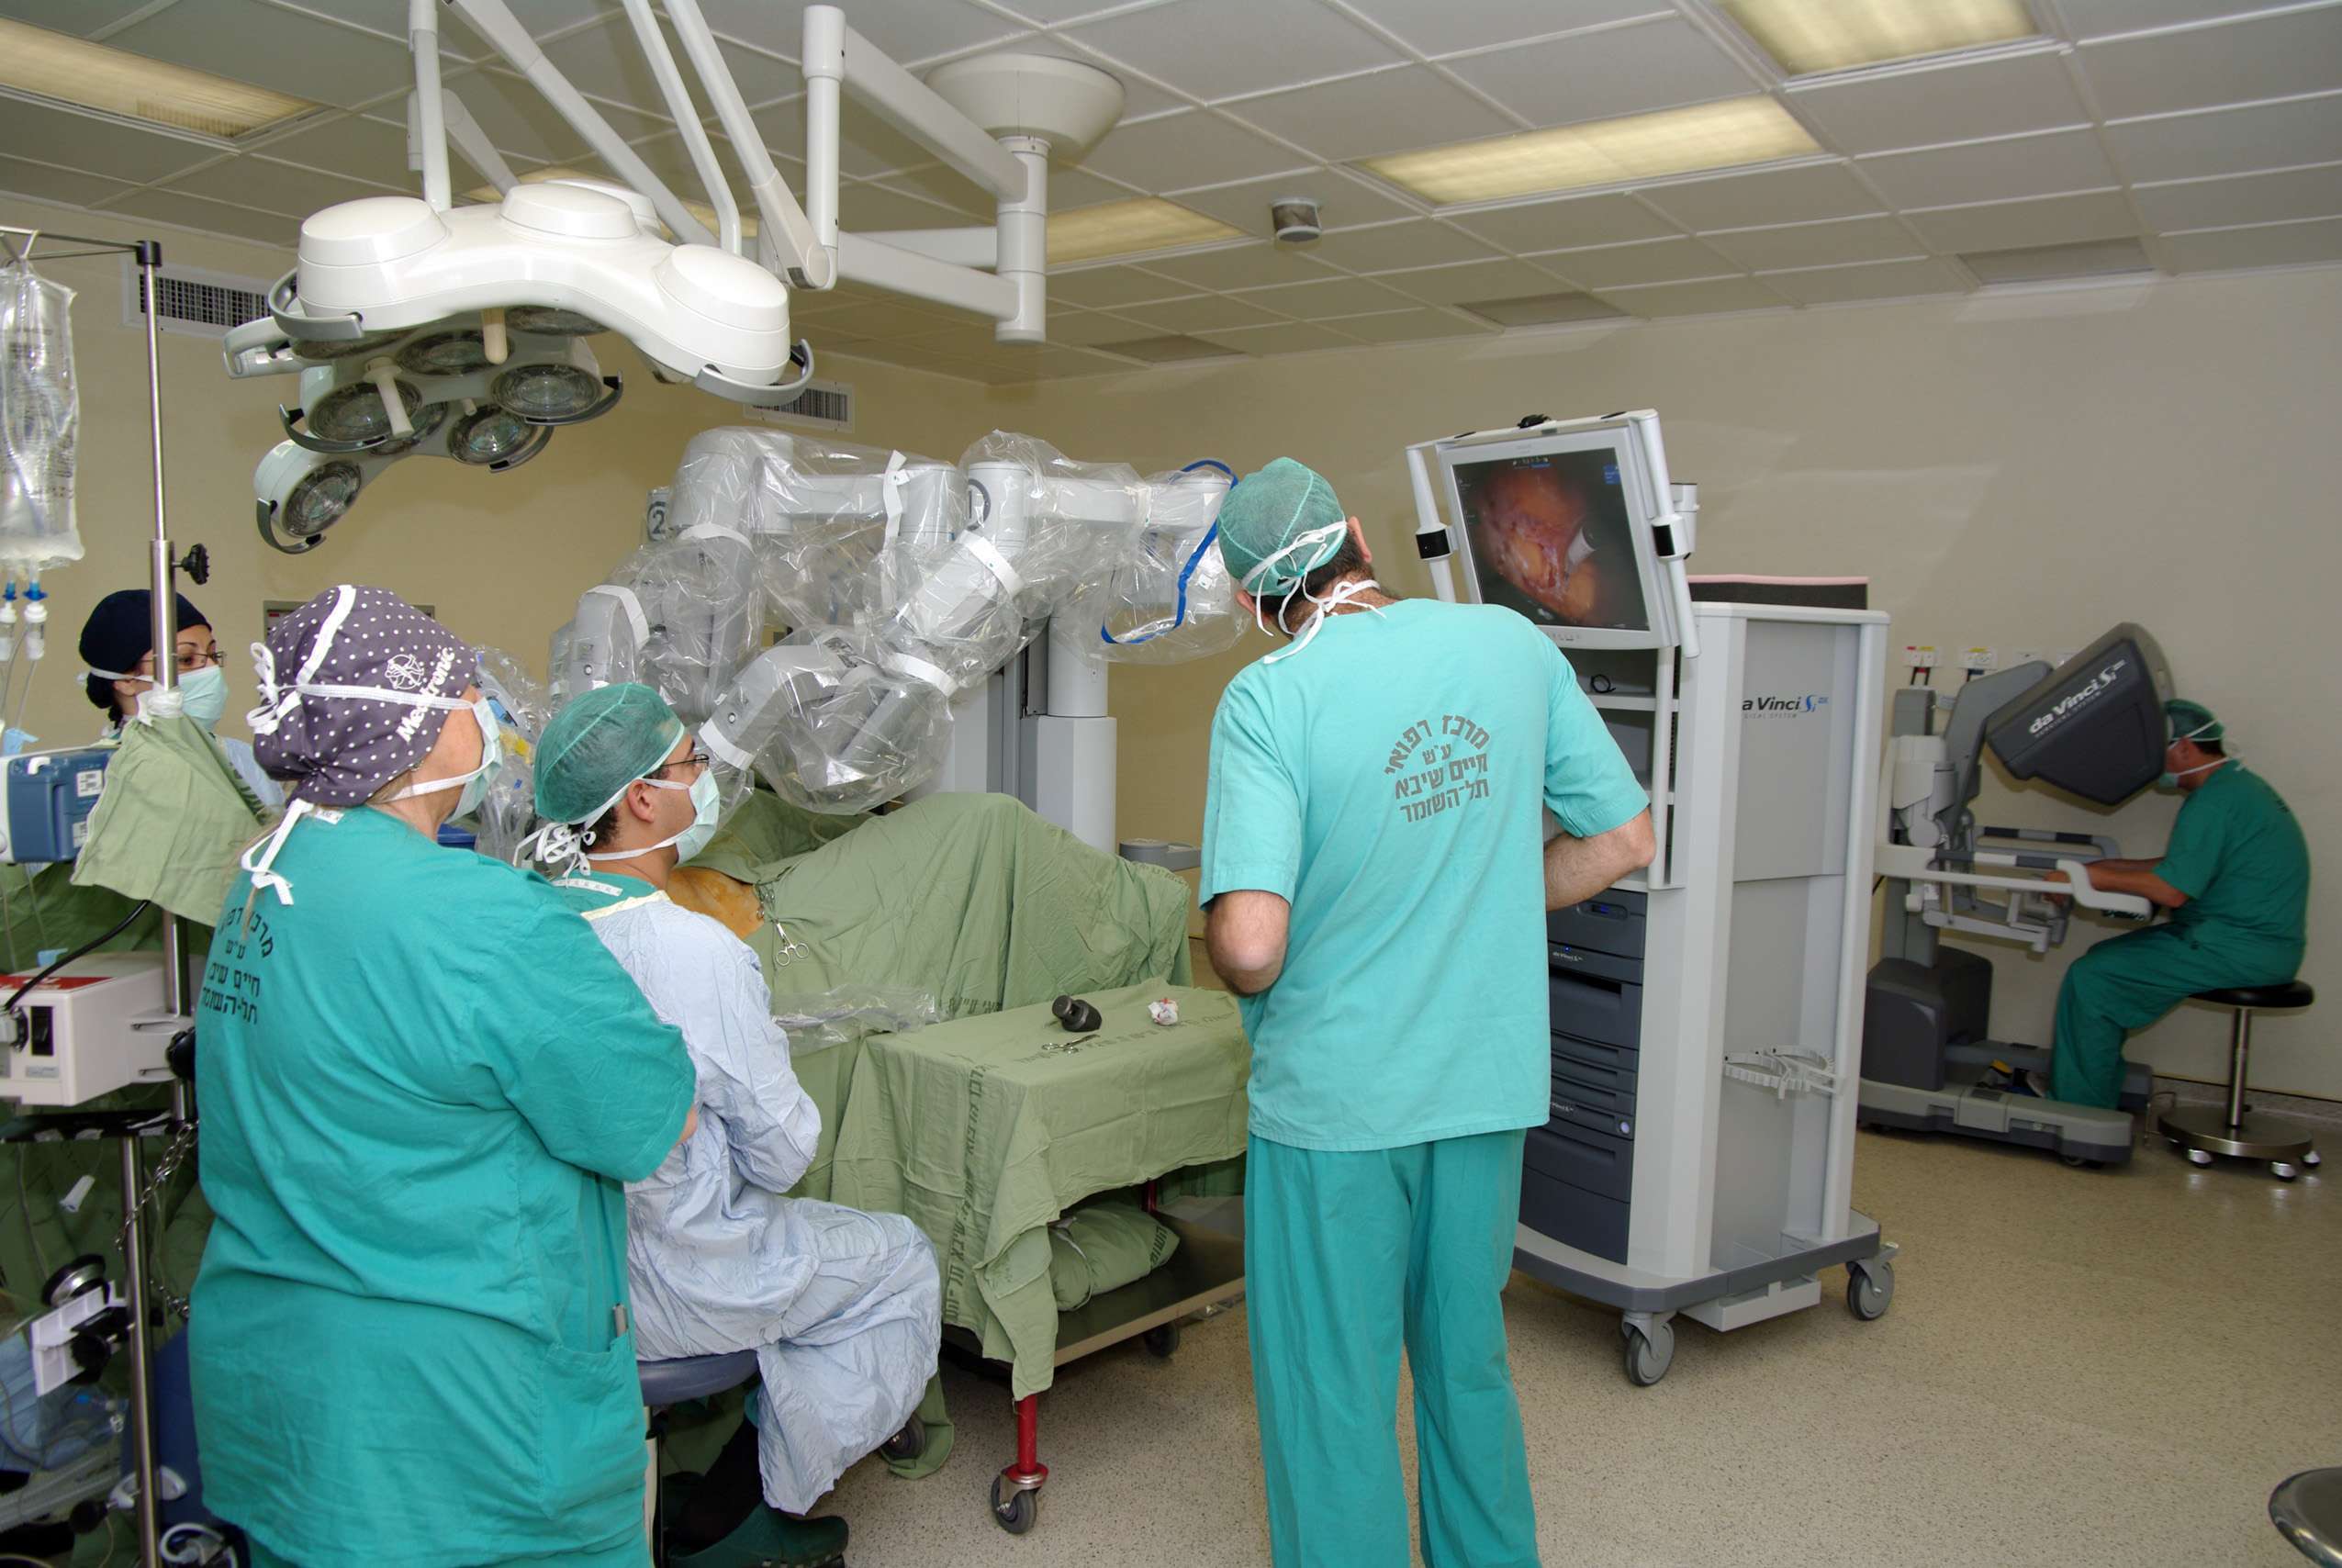 הרובוט דה וינצ'י בפעולה ( תצלום: דוברות בית החולים שיבא, תל השומר)